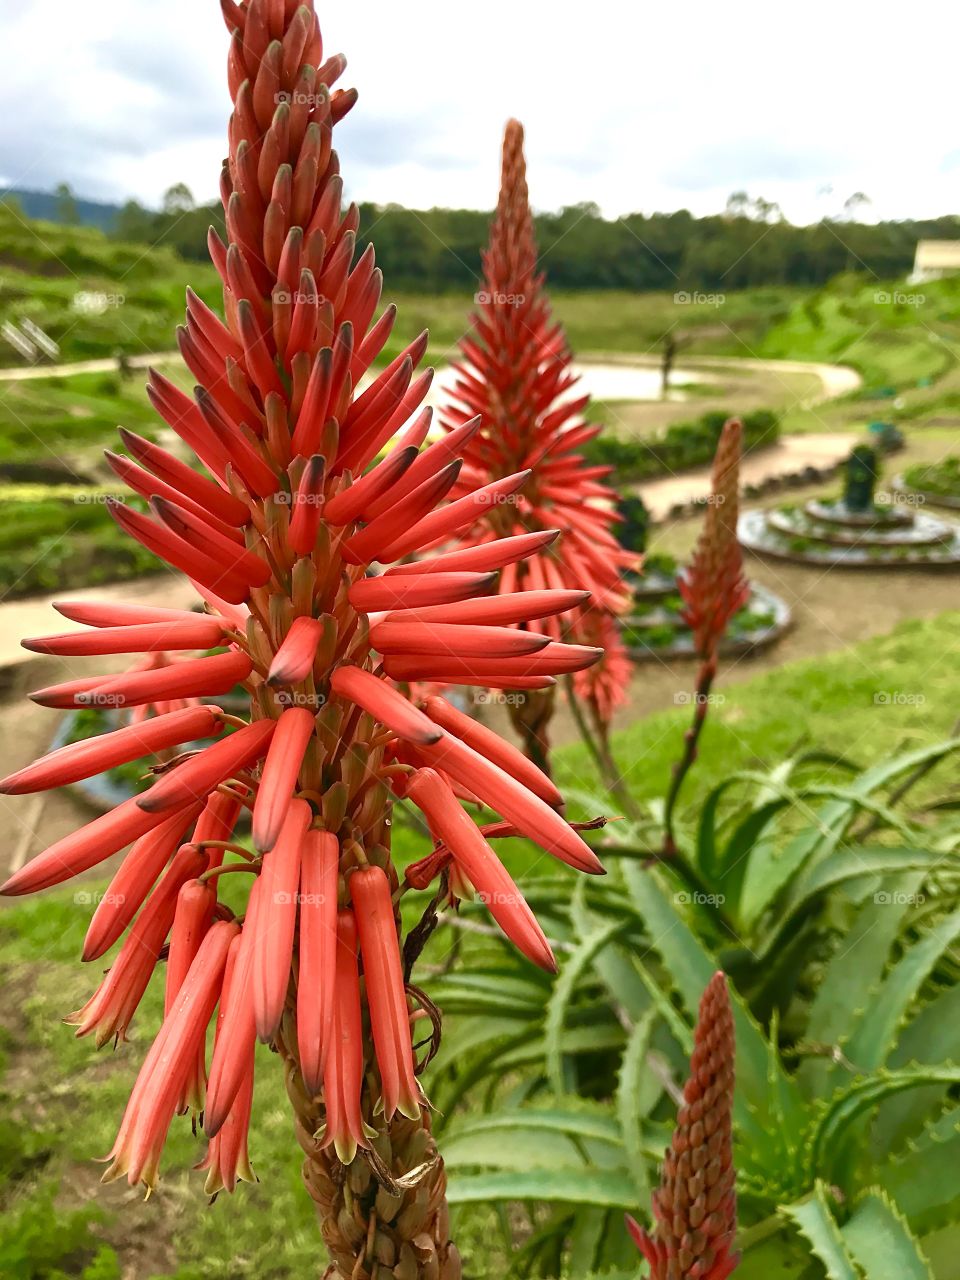 Wild Aloe vera flower in a herb garden...